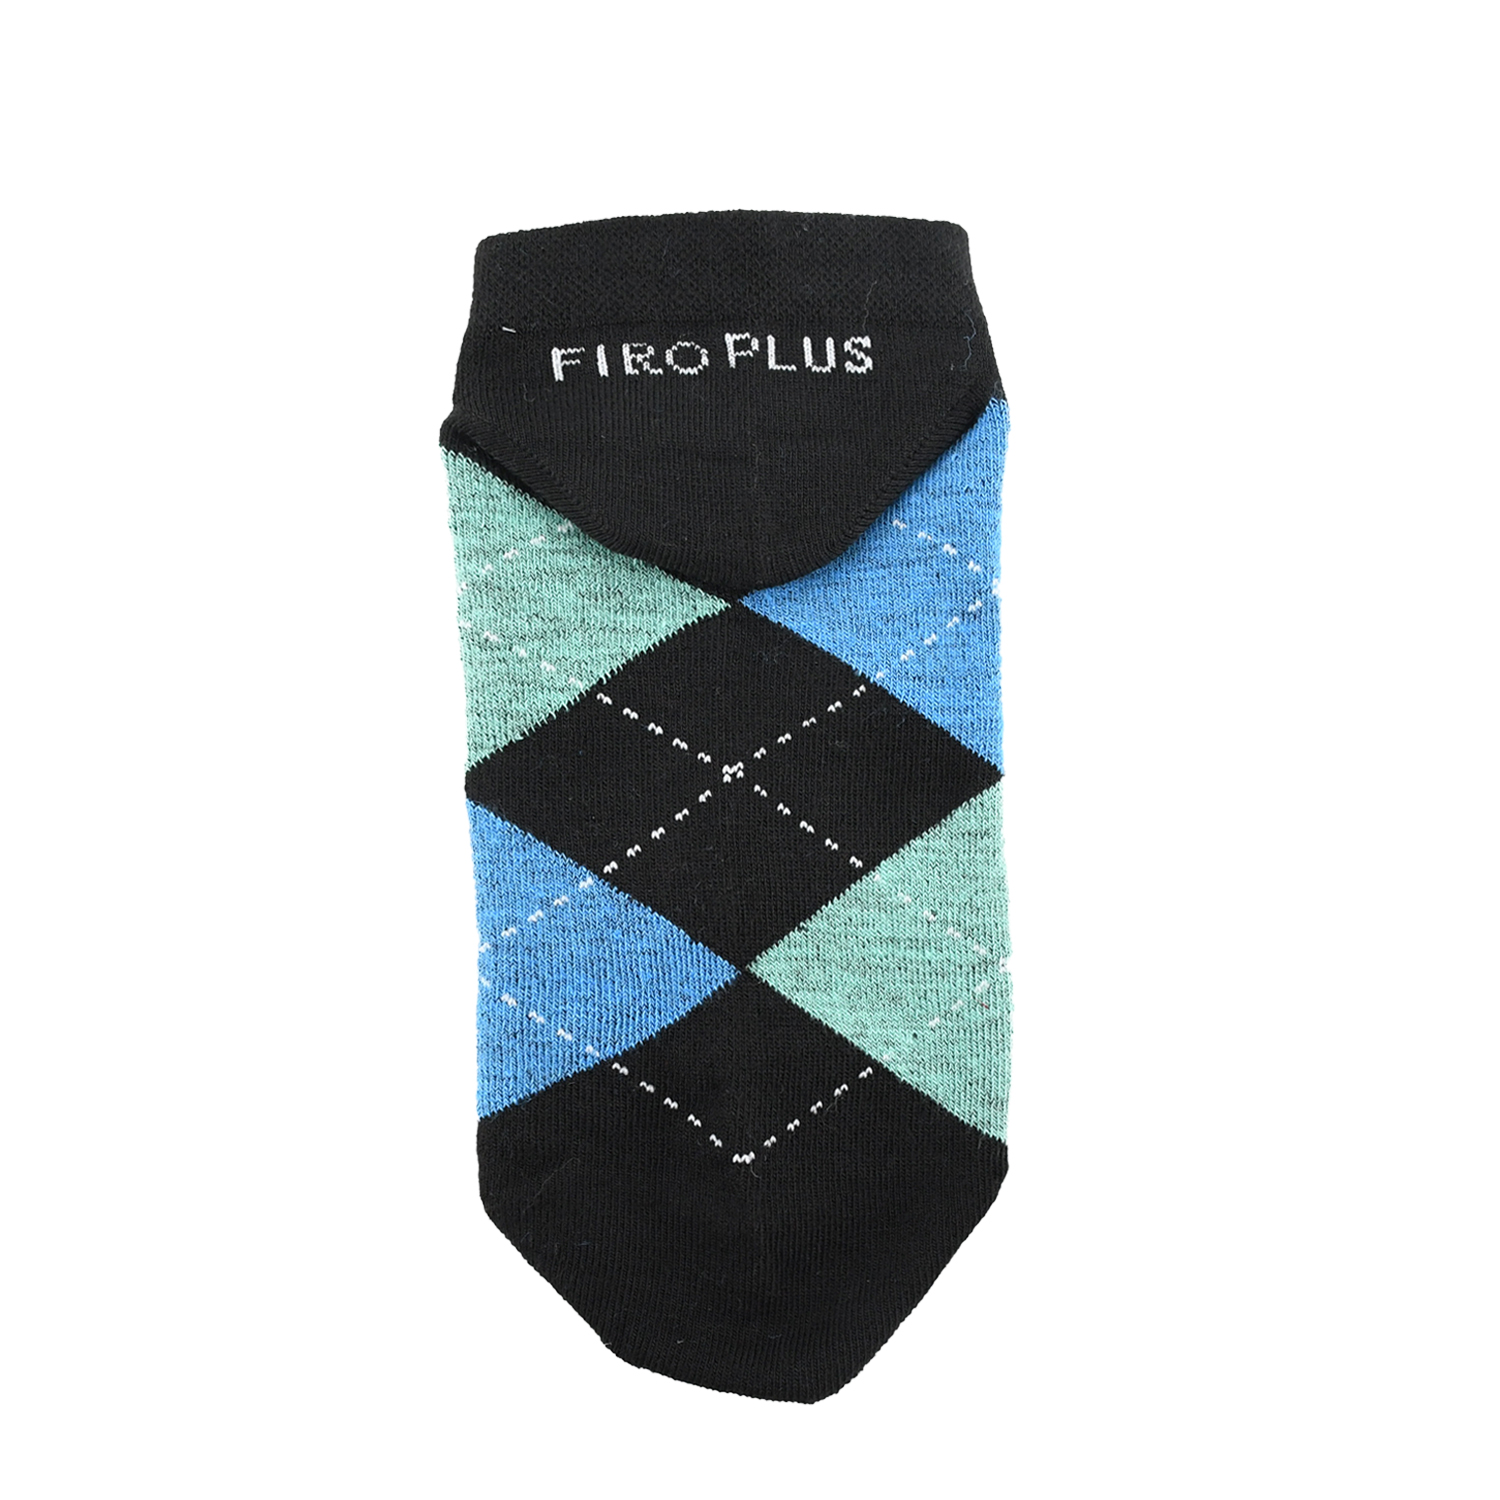 جوراب مردانه فیرو پلاس کد FP3100 مجموعه 6 عددی -  - 8